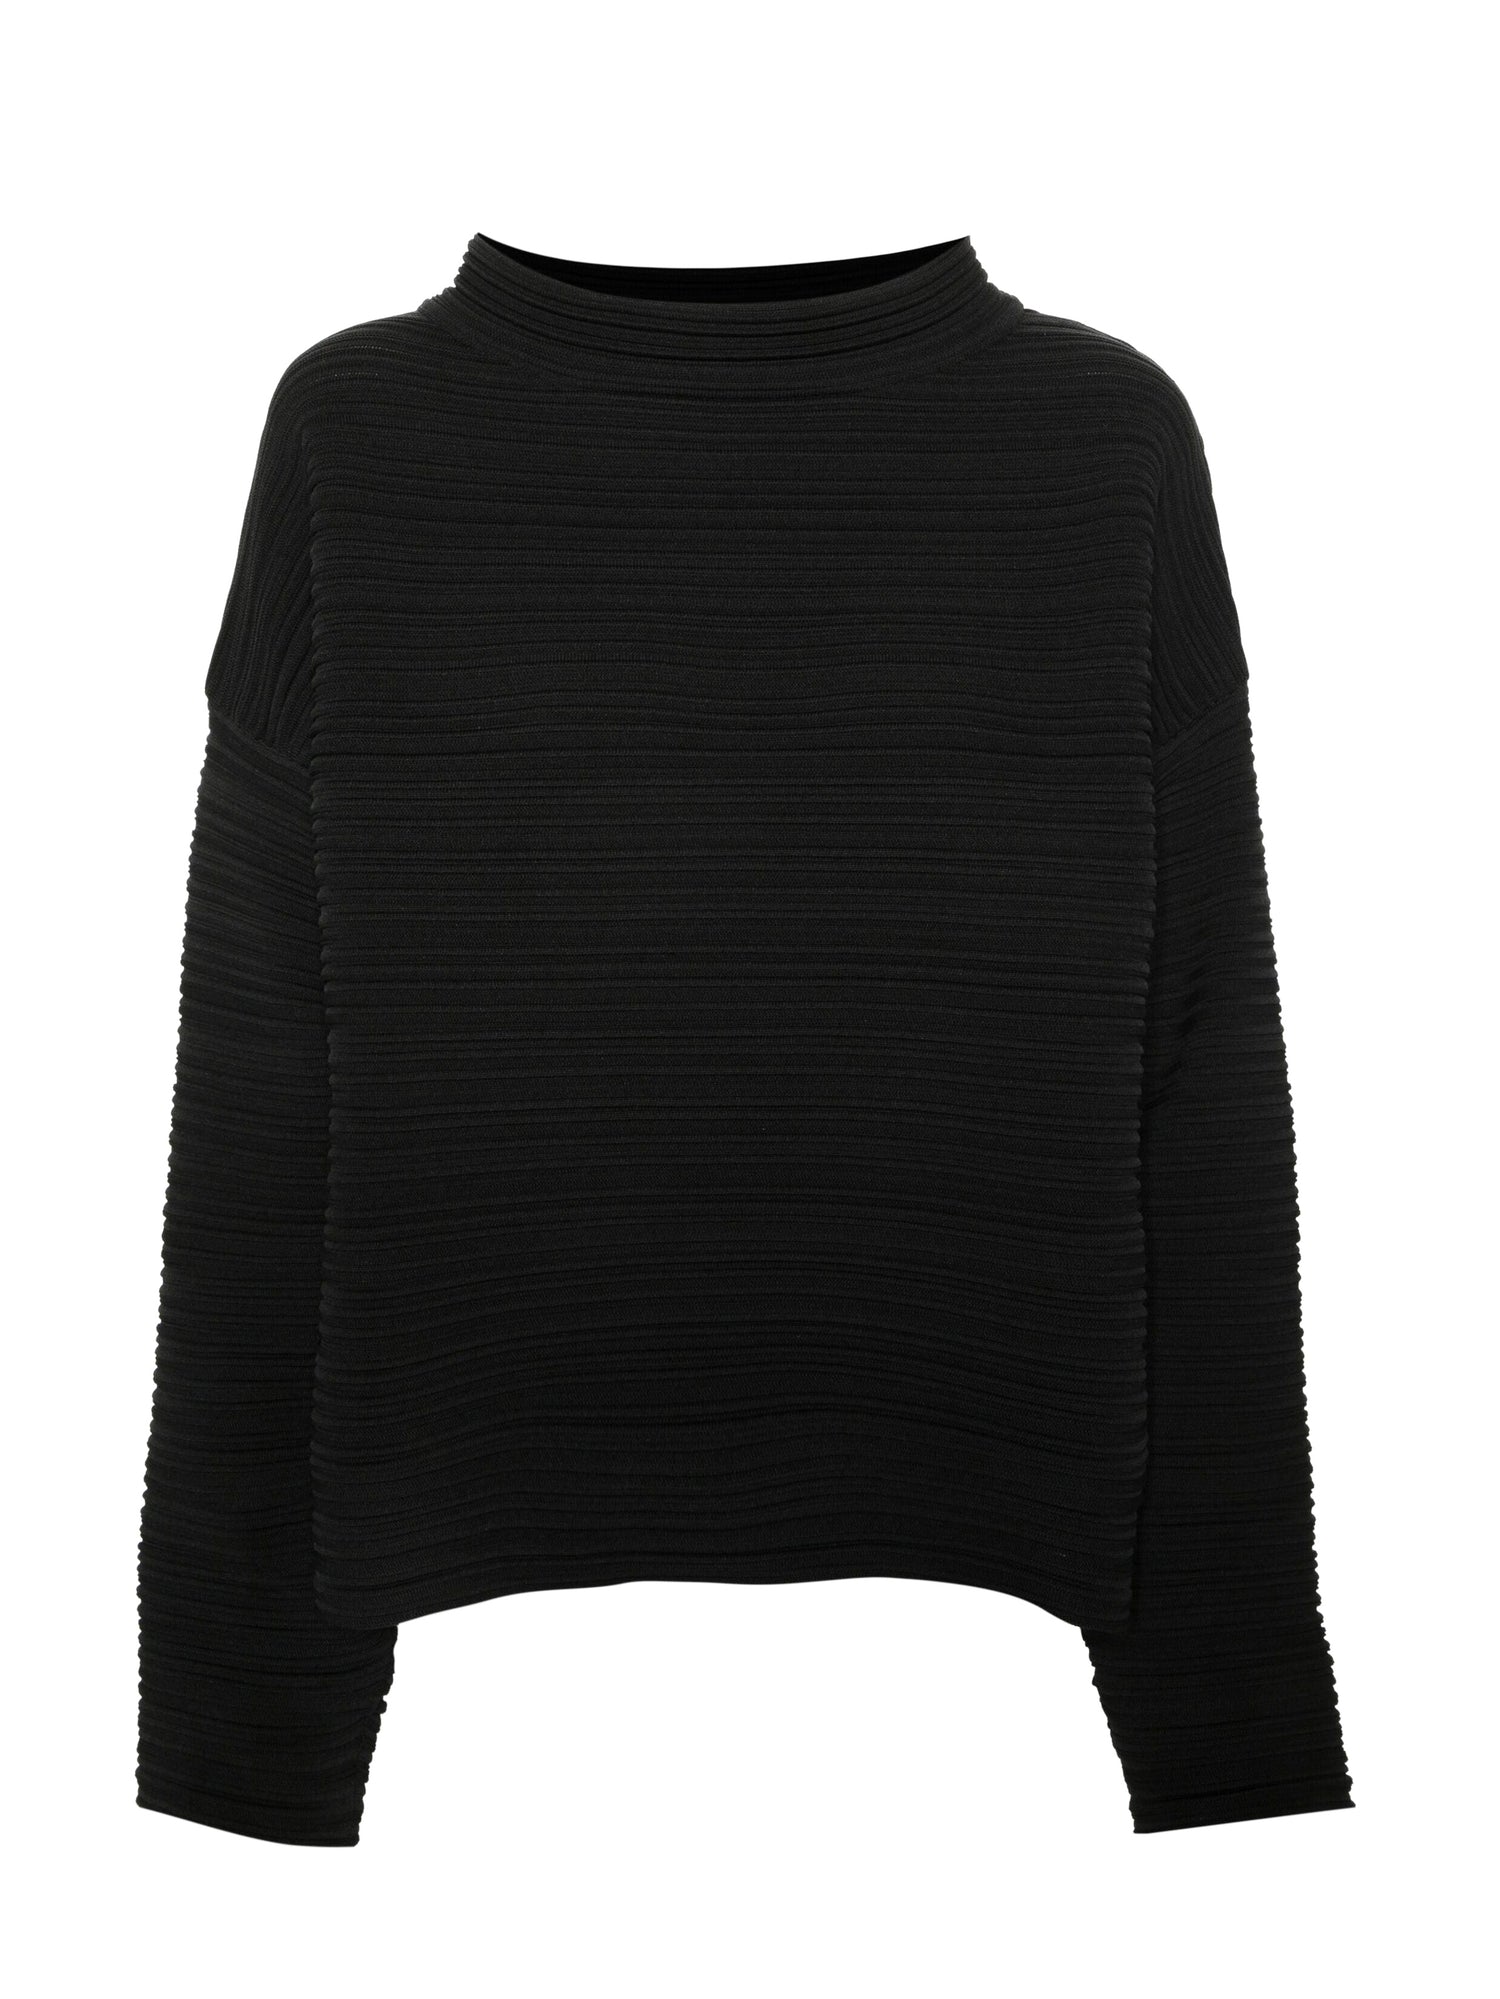 Pleated sweater, black